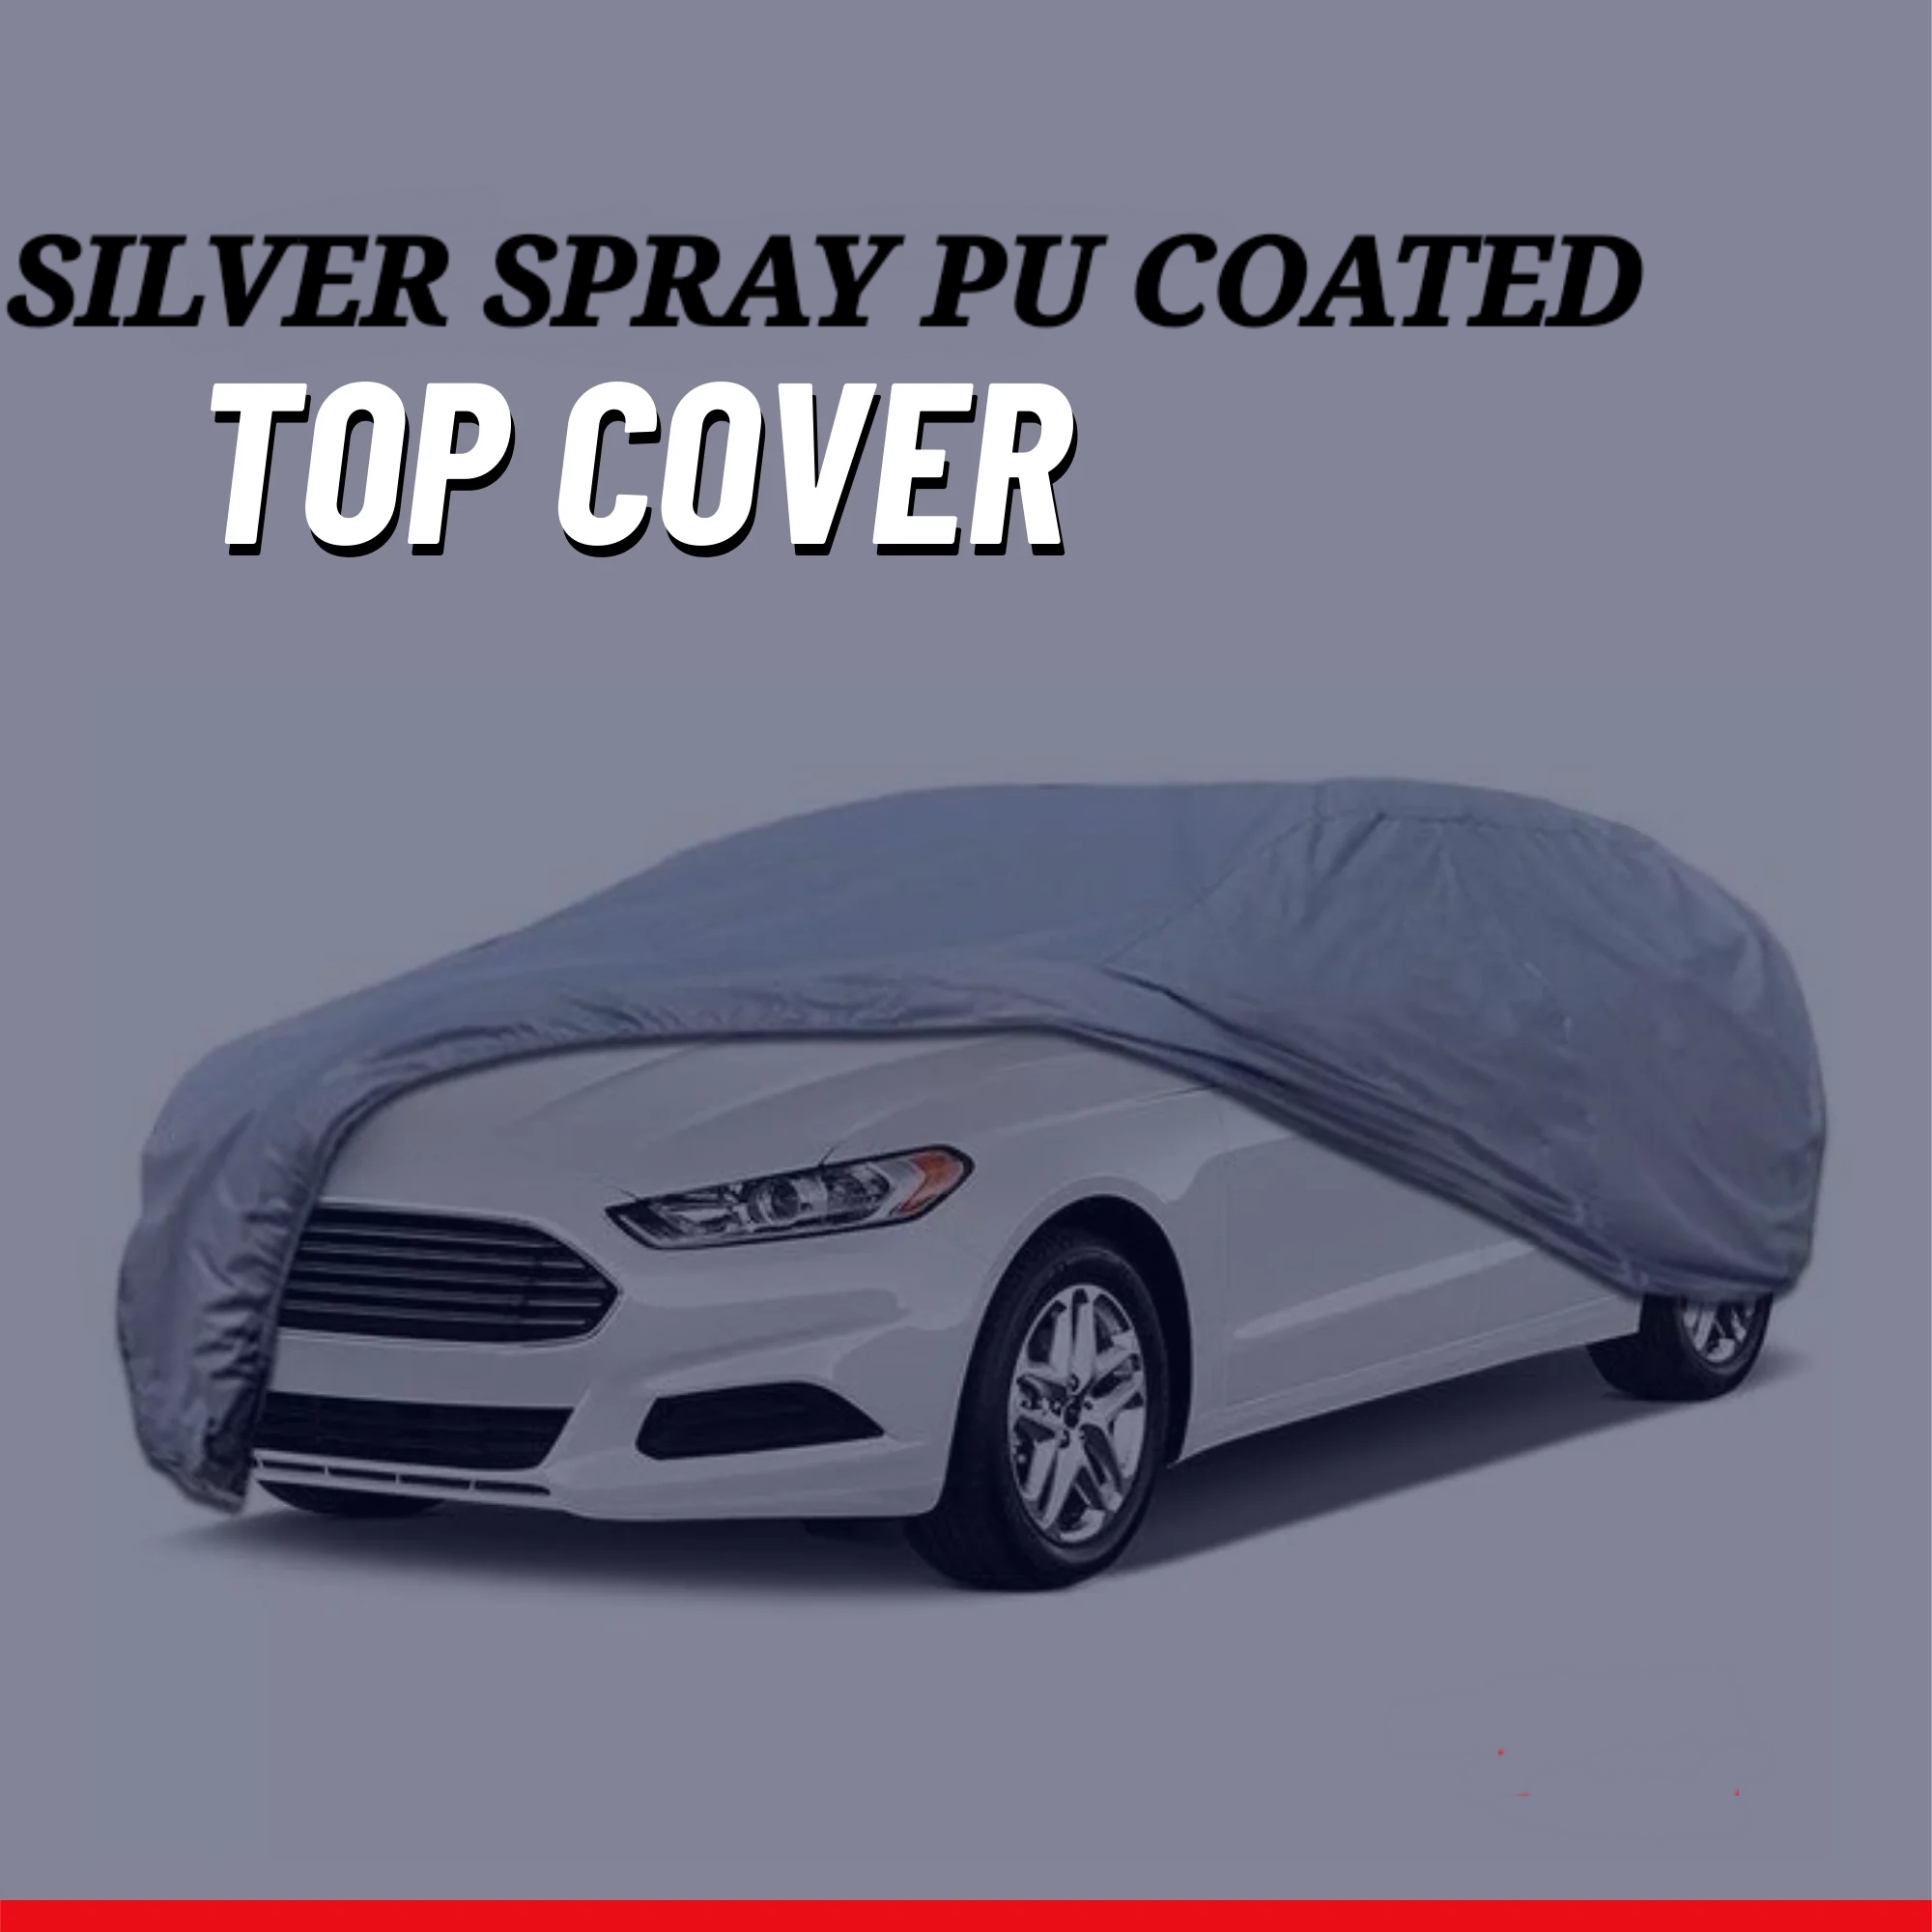 Honda City 2008-2014 Car Top Cover - Waterproof & Dustproof Silver Spray Coated + Free Bag